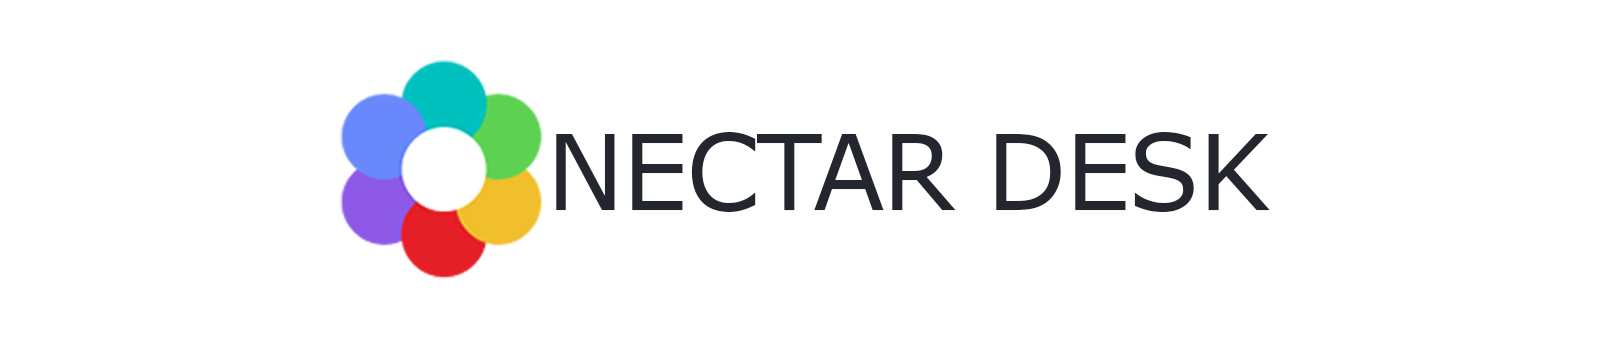 Nectar Desk Logo